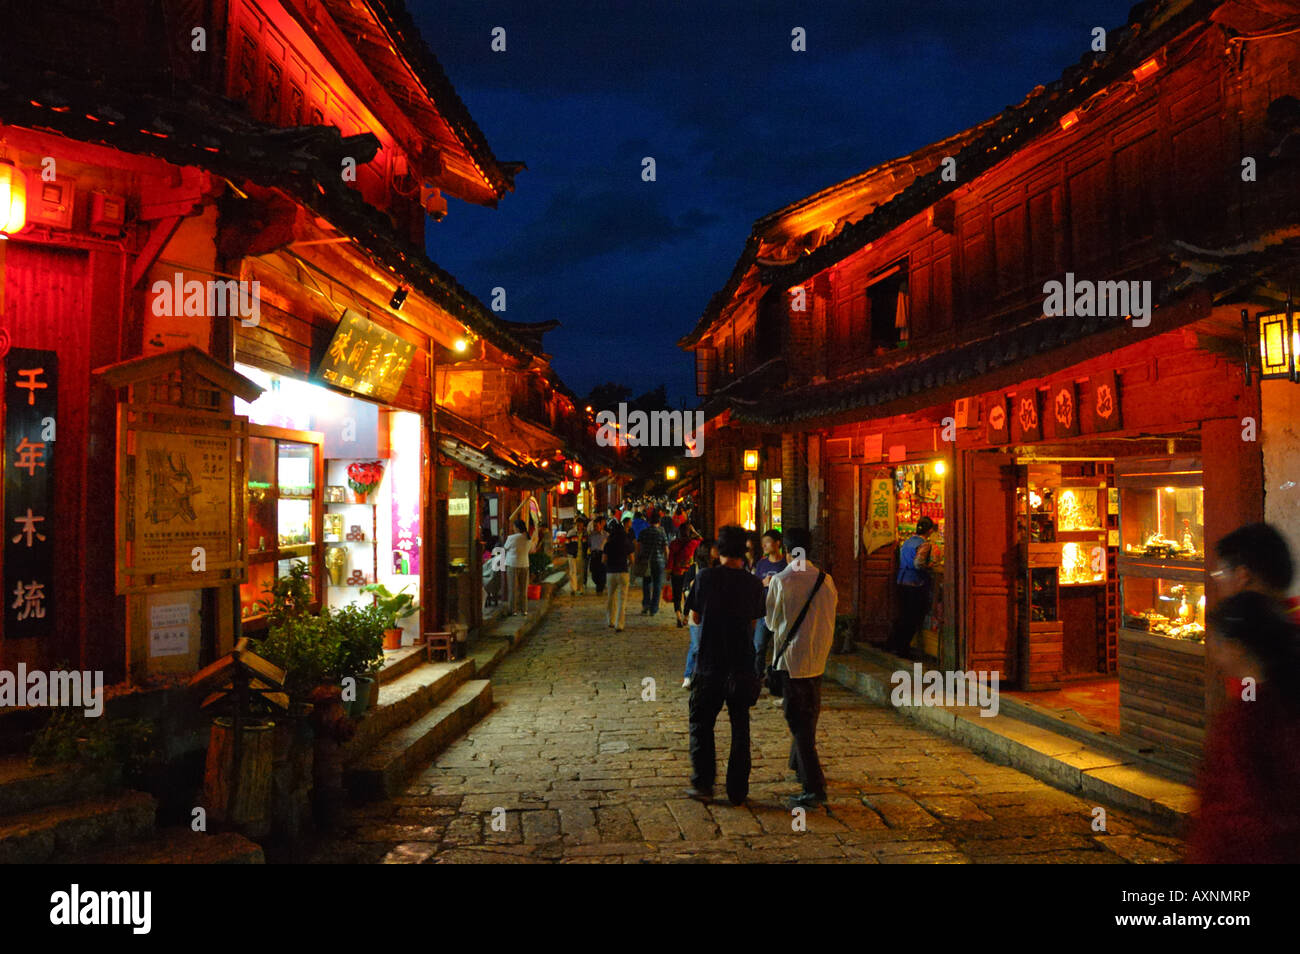 Lijiang di notte. Illuminata luminosamente negozi lungo il lastricato in pietra street. Lijiang, Yunnan in Cina. Foto Stock